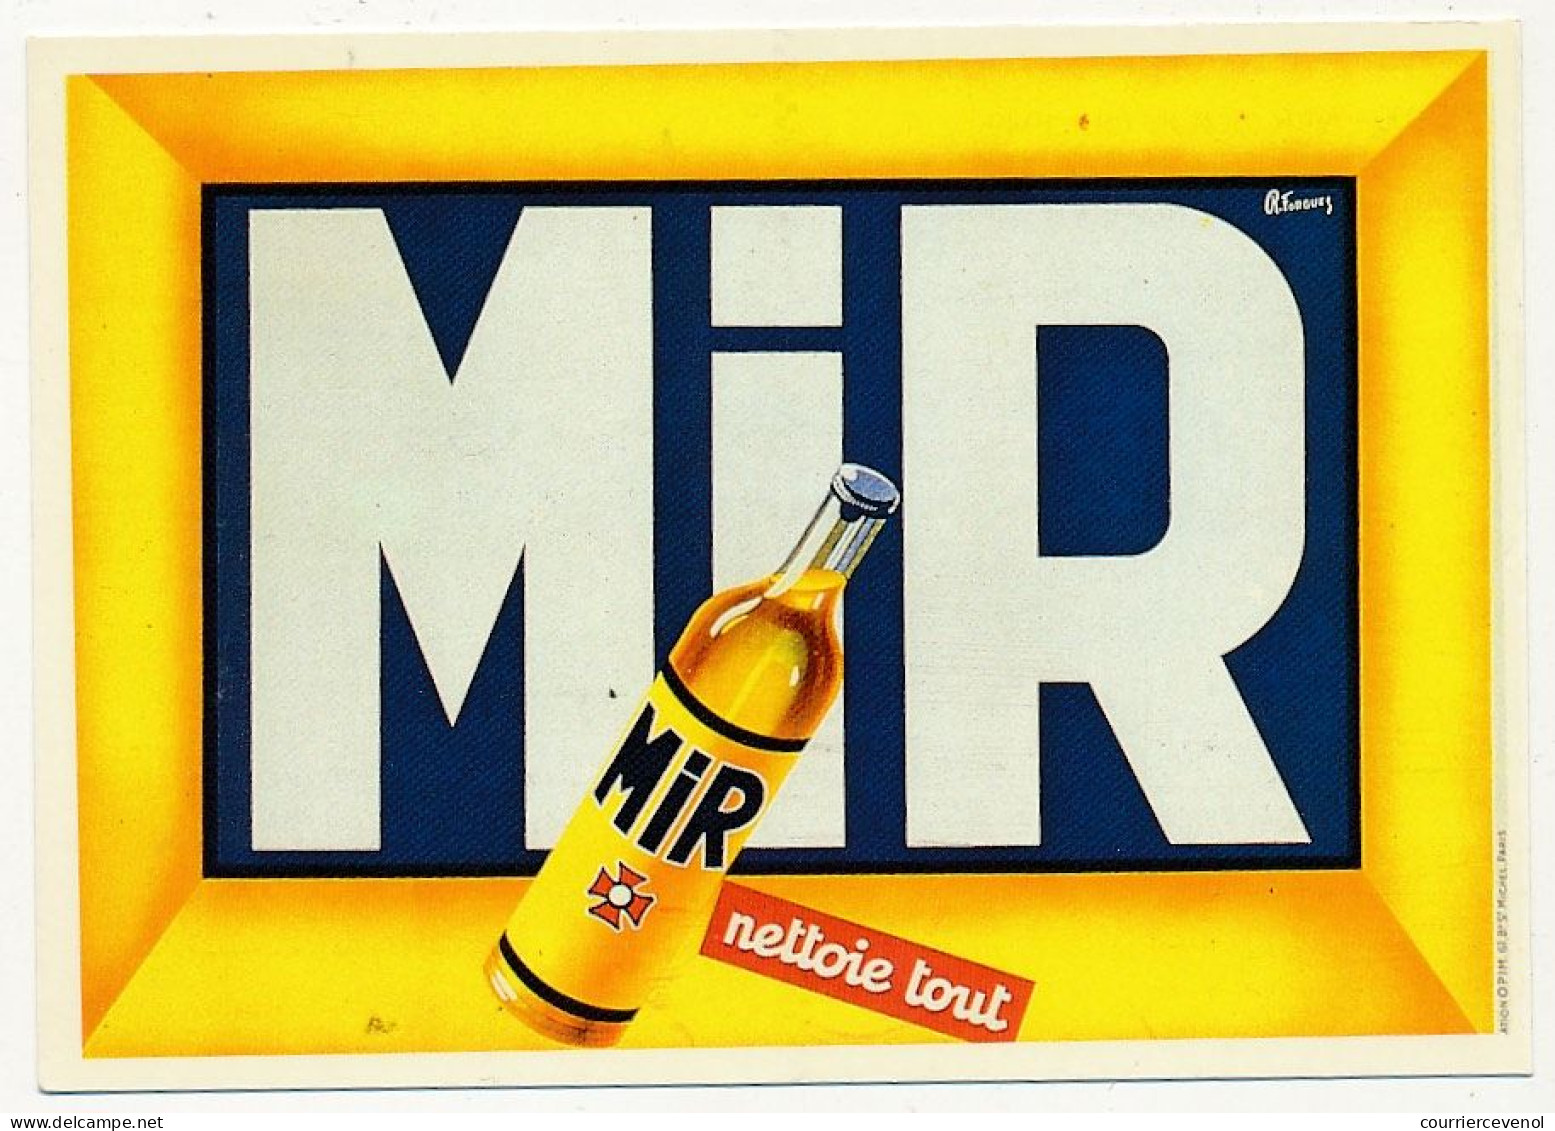 CPM - "MIR Nettoie Tout" - Affiche De Roland Forgues - 1949 - Advertising